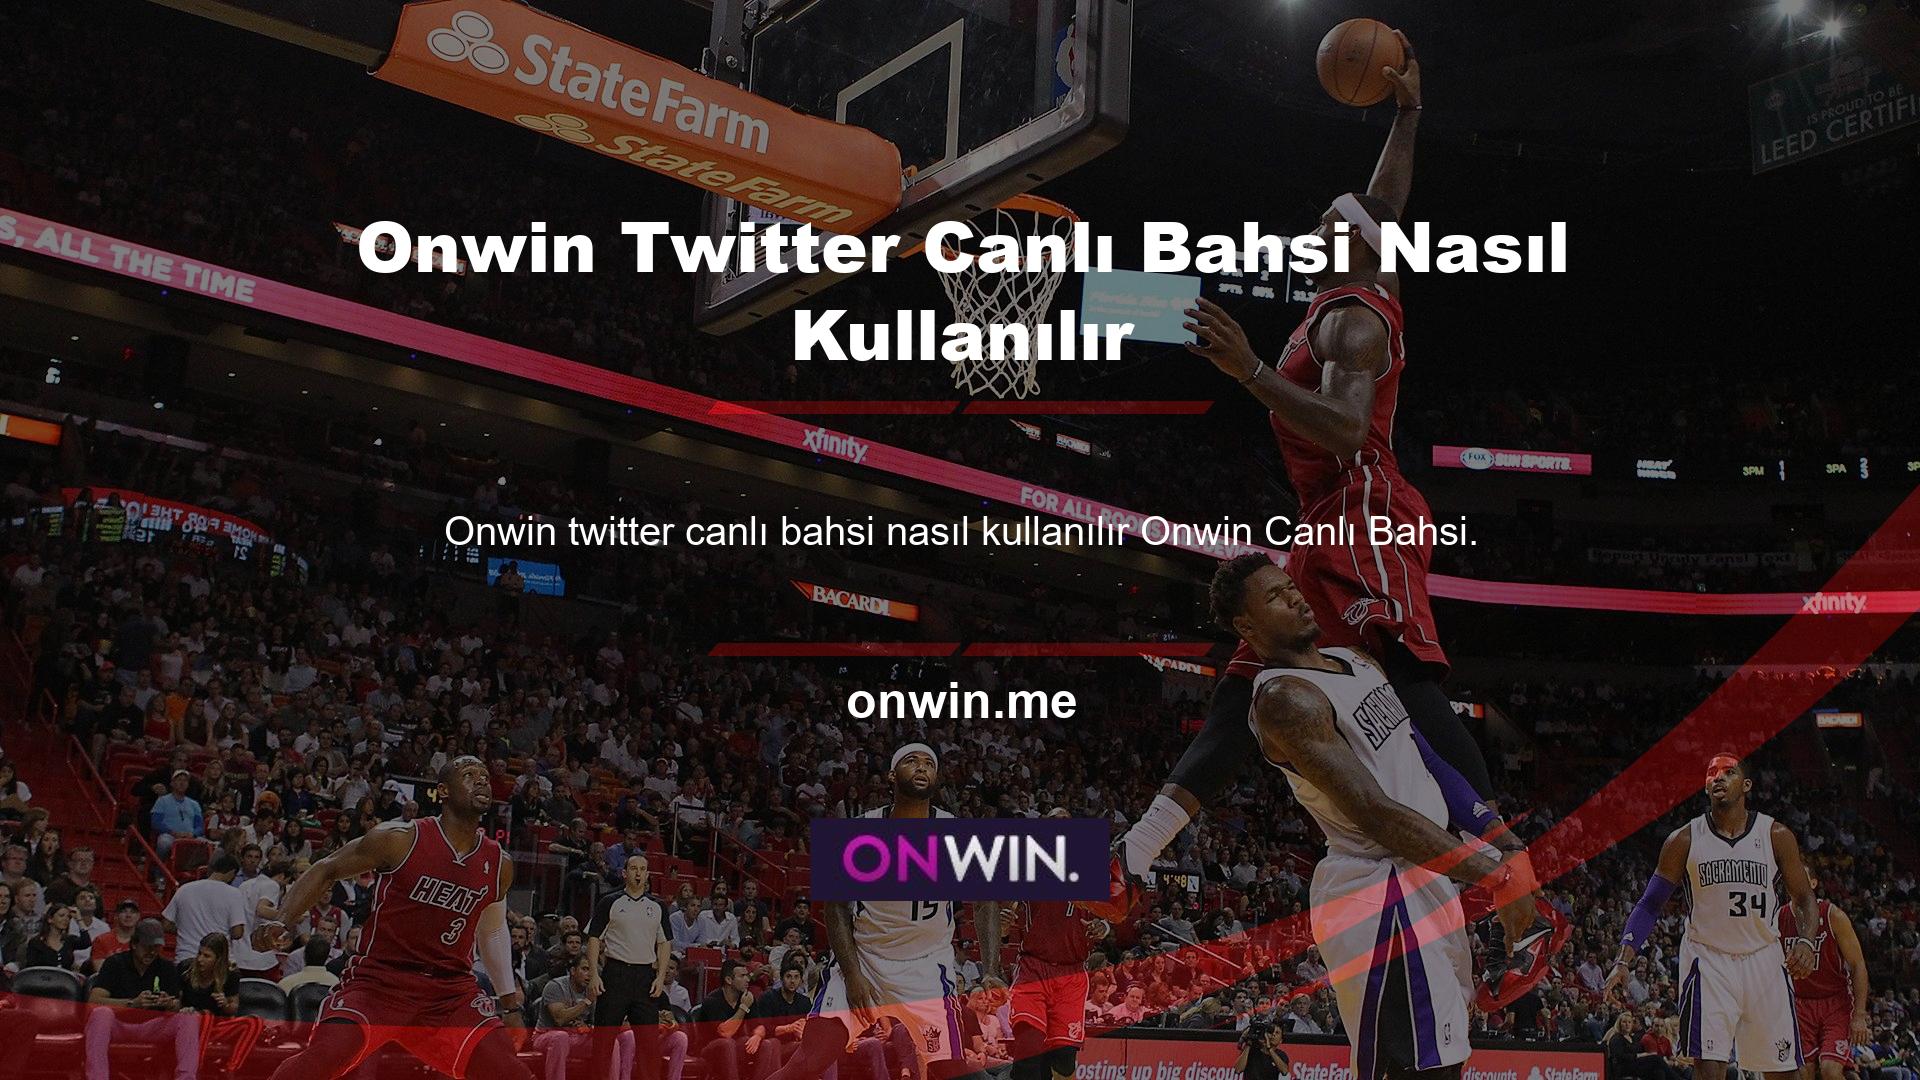 Onwin twitter canlı bahsi nasıl kullanılır